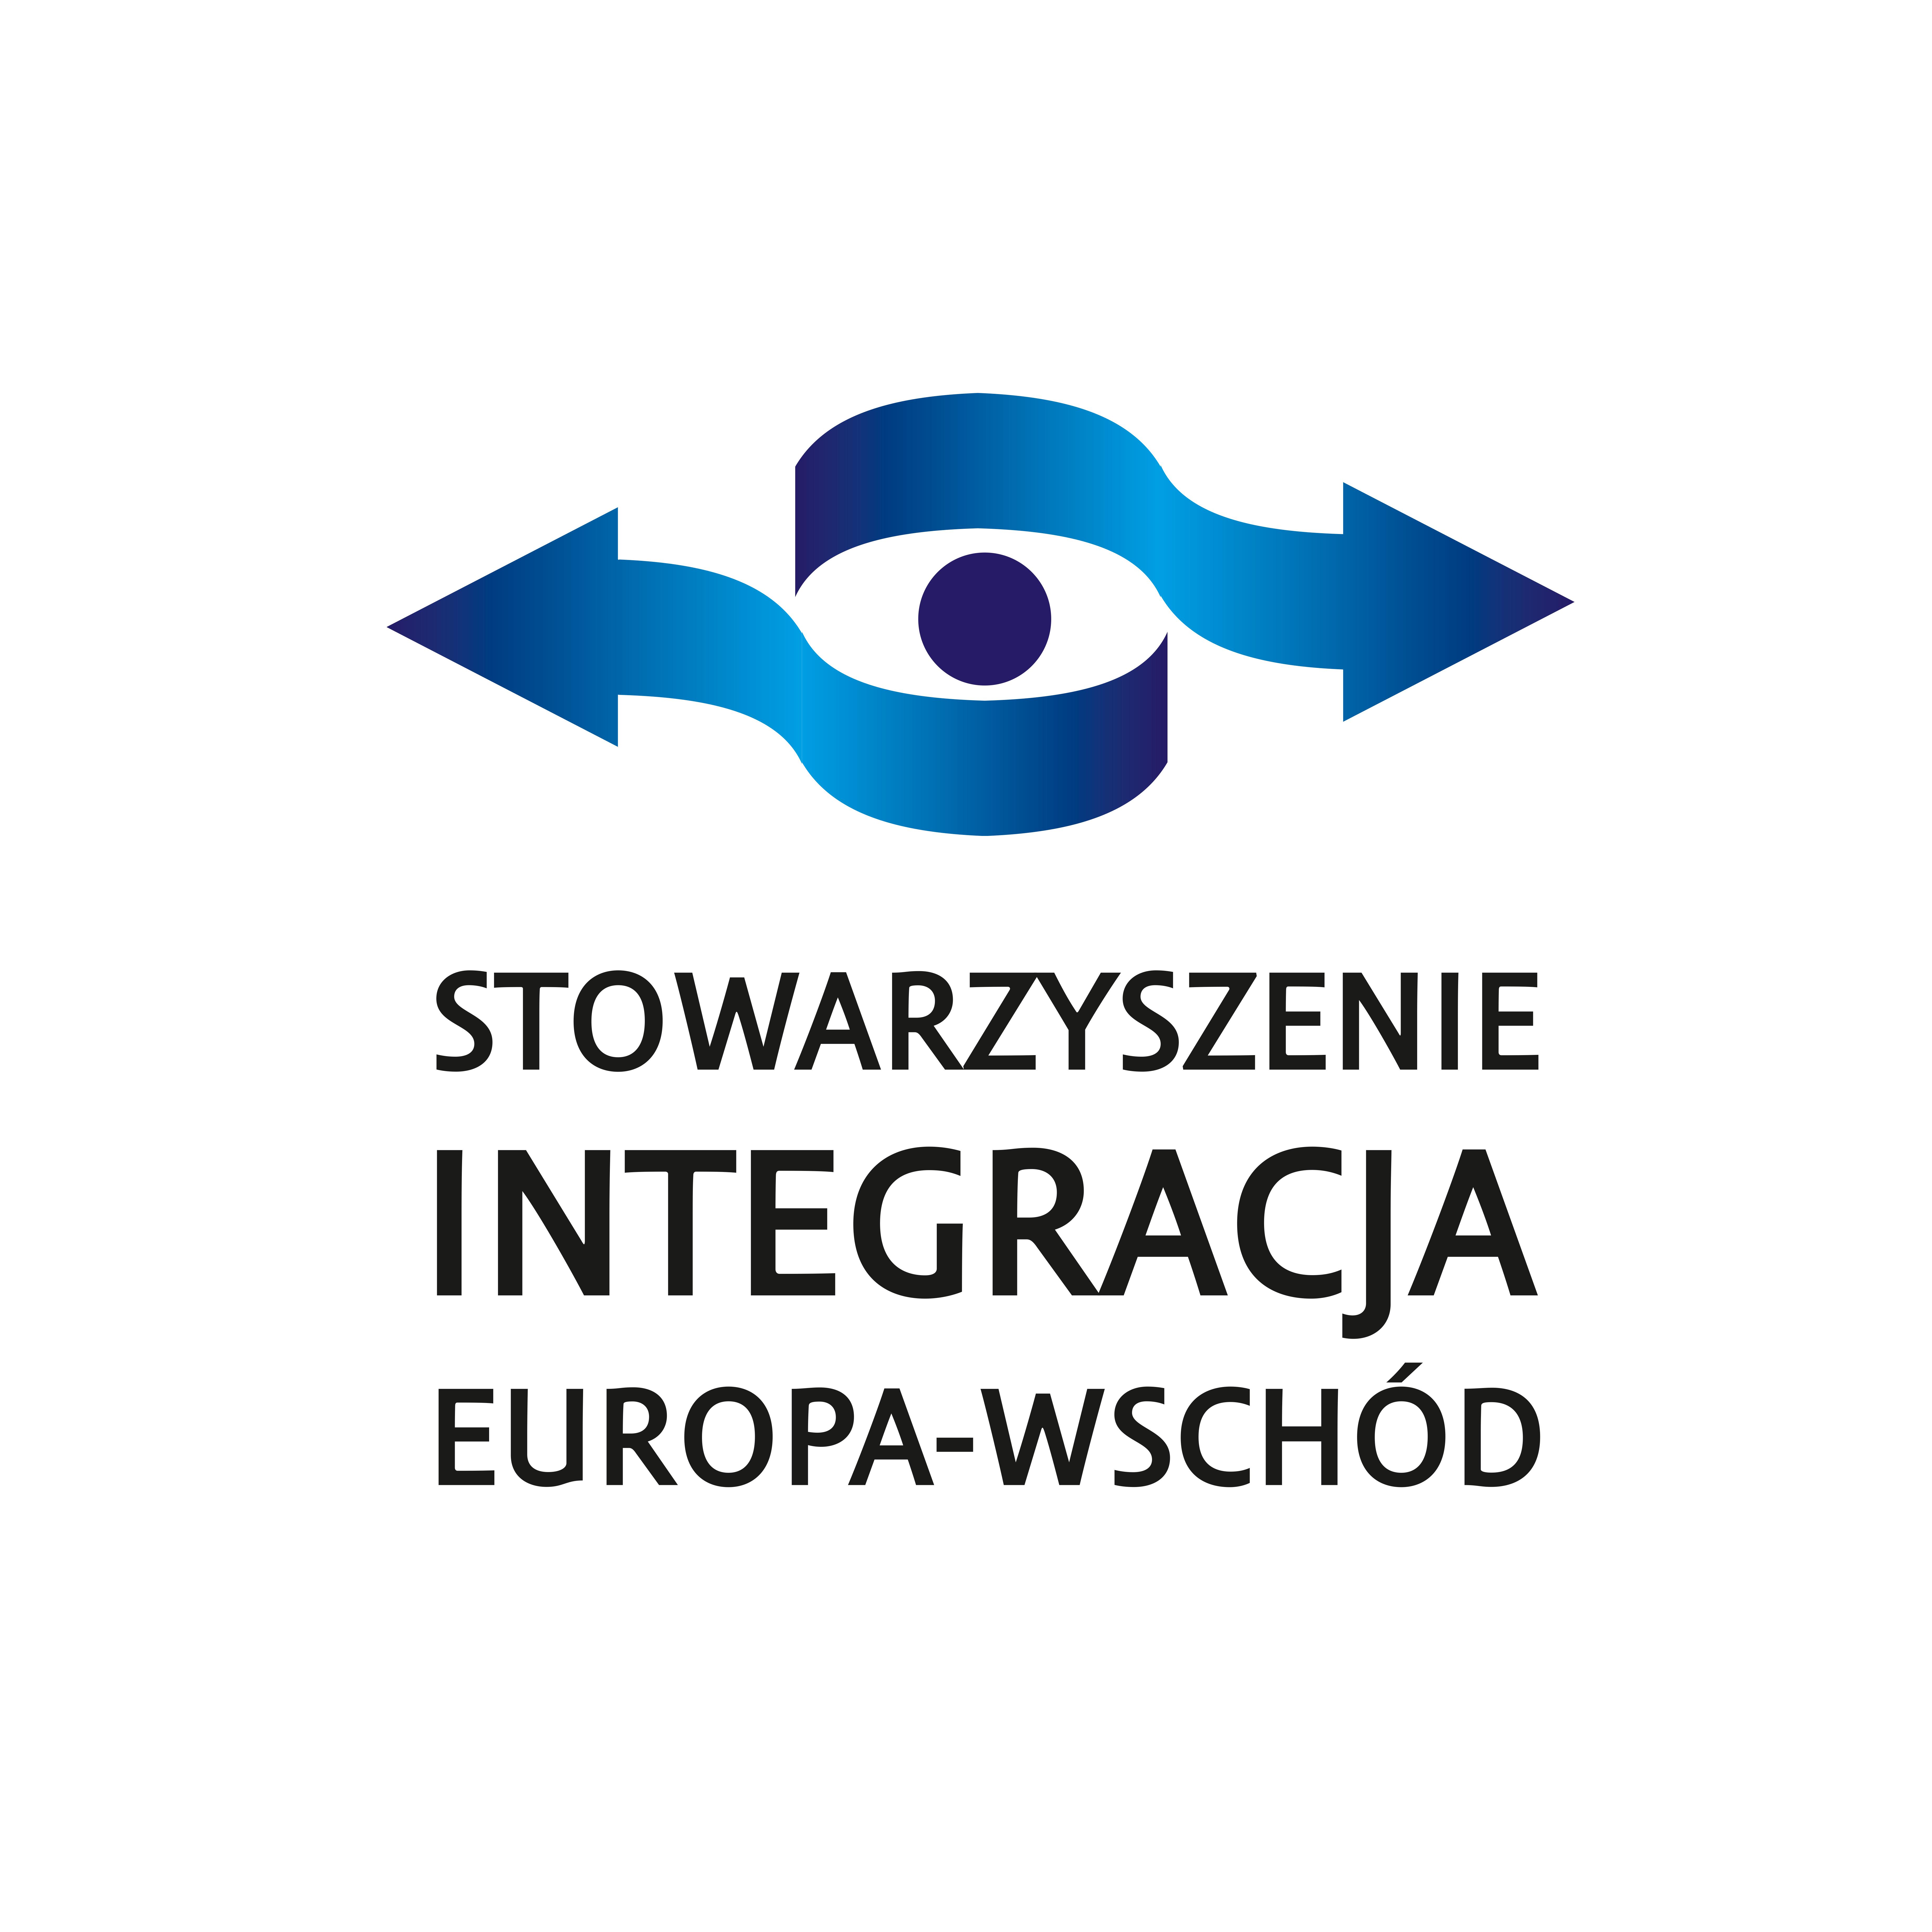 Stowarzyszenie Integracja Europa Wschód